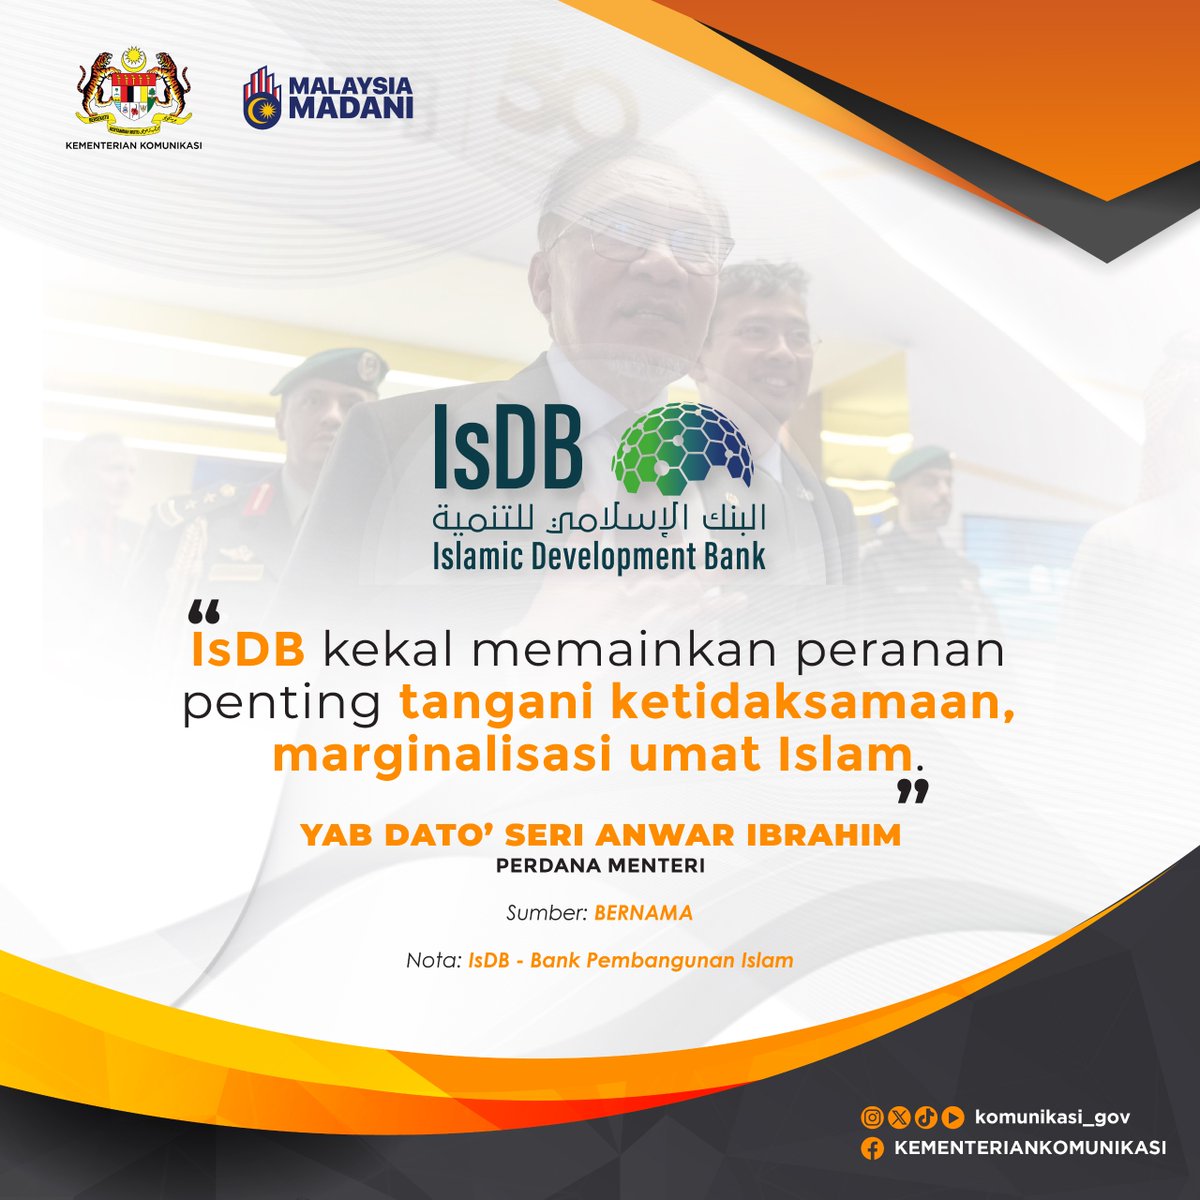 Bank Pembangunan Islam (IsDB) kekal memainkan peranan penting tangani ketidaksamaan, marginalisasi umat Islam.

YAB Dato’ Seri Anwar Ibrahim
Perdana Menteri

#KementerianKomunikasi #MalaysiaMADANI